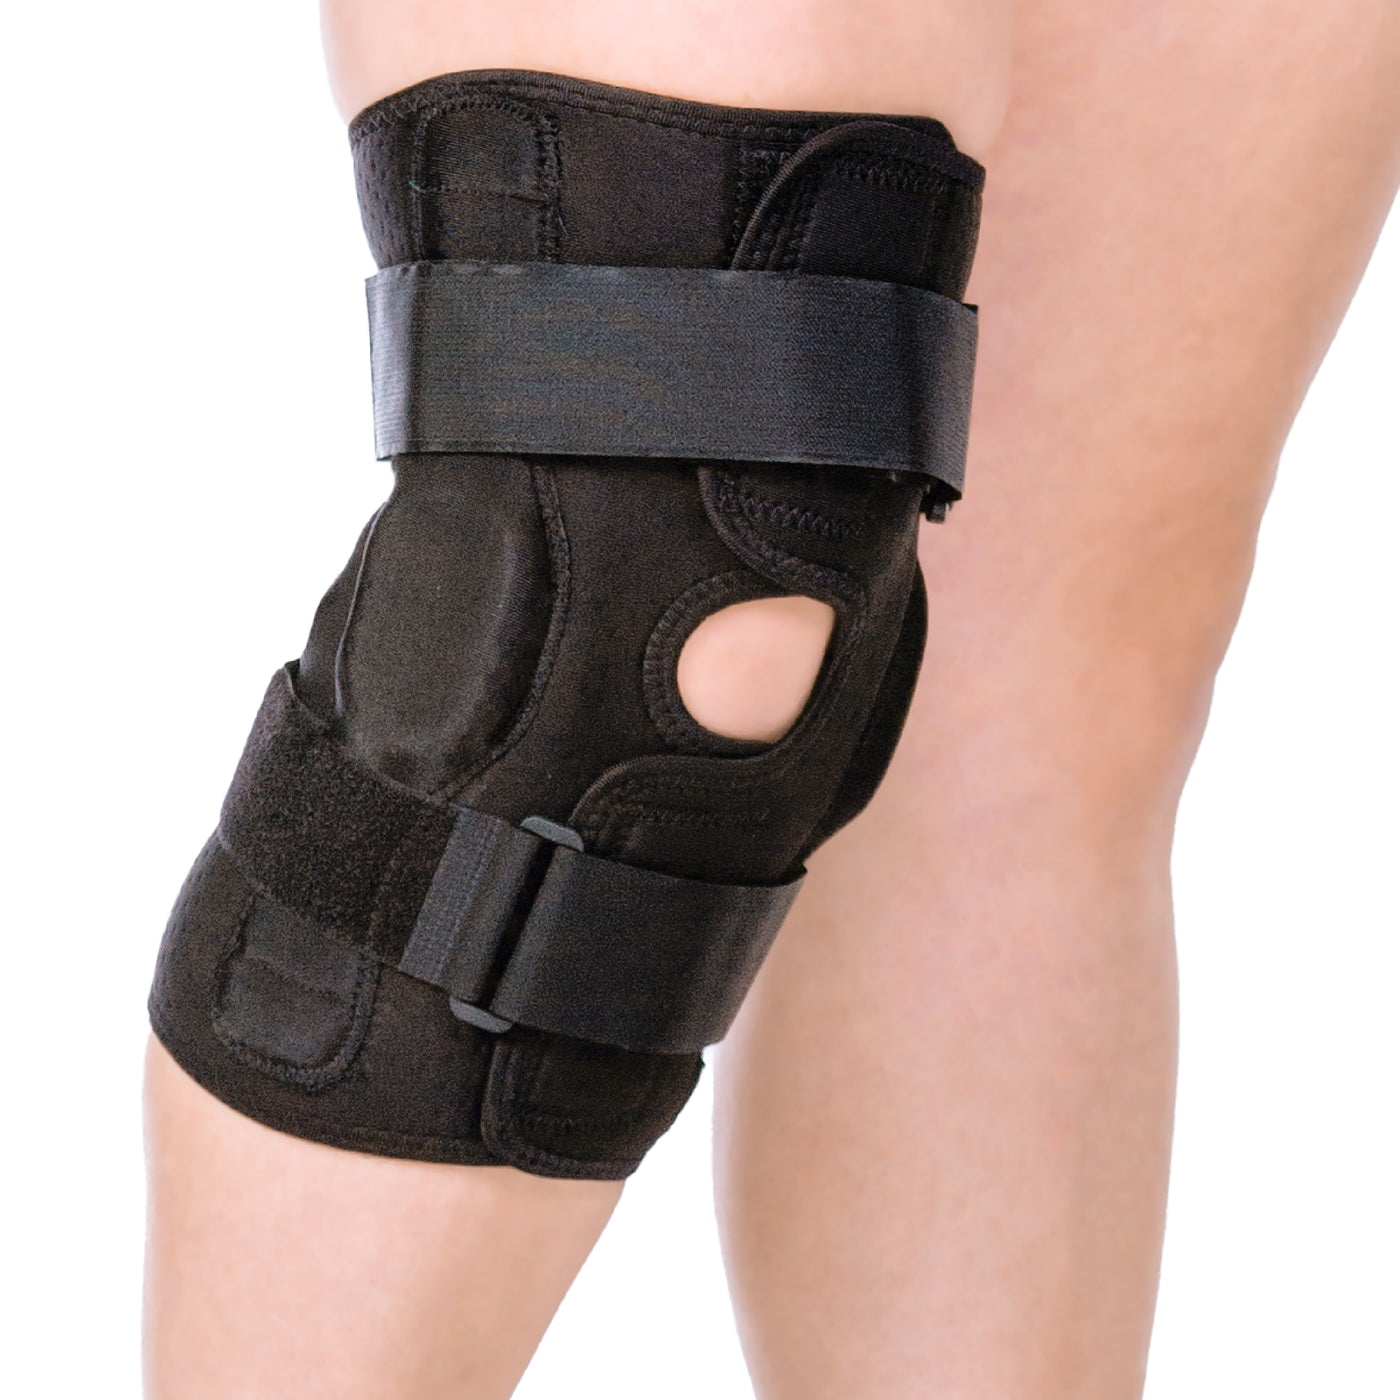 Trekzor Knee Brace for Knee Pain, Meniscus Tear, Arthritis Pain